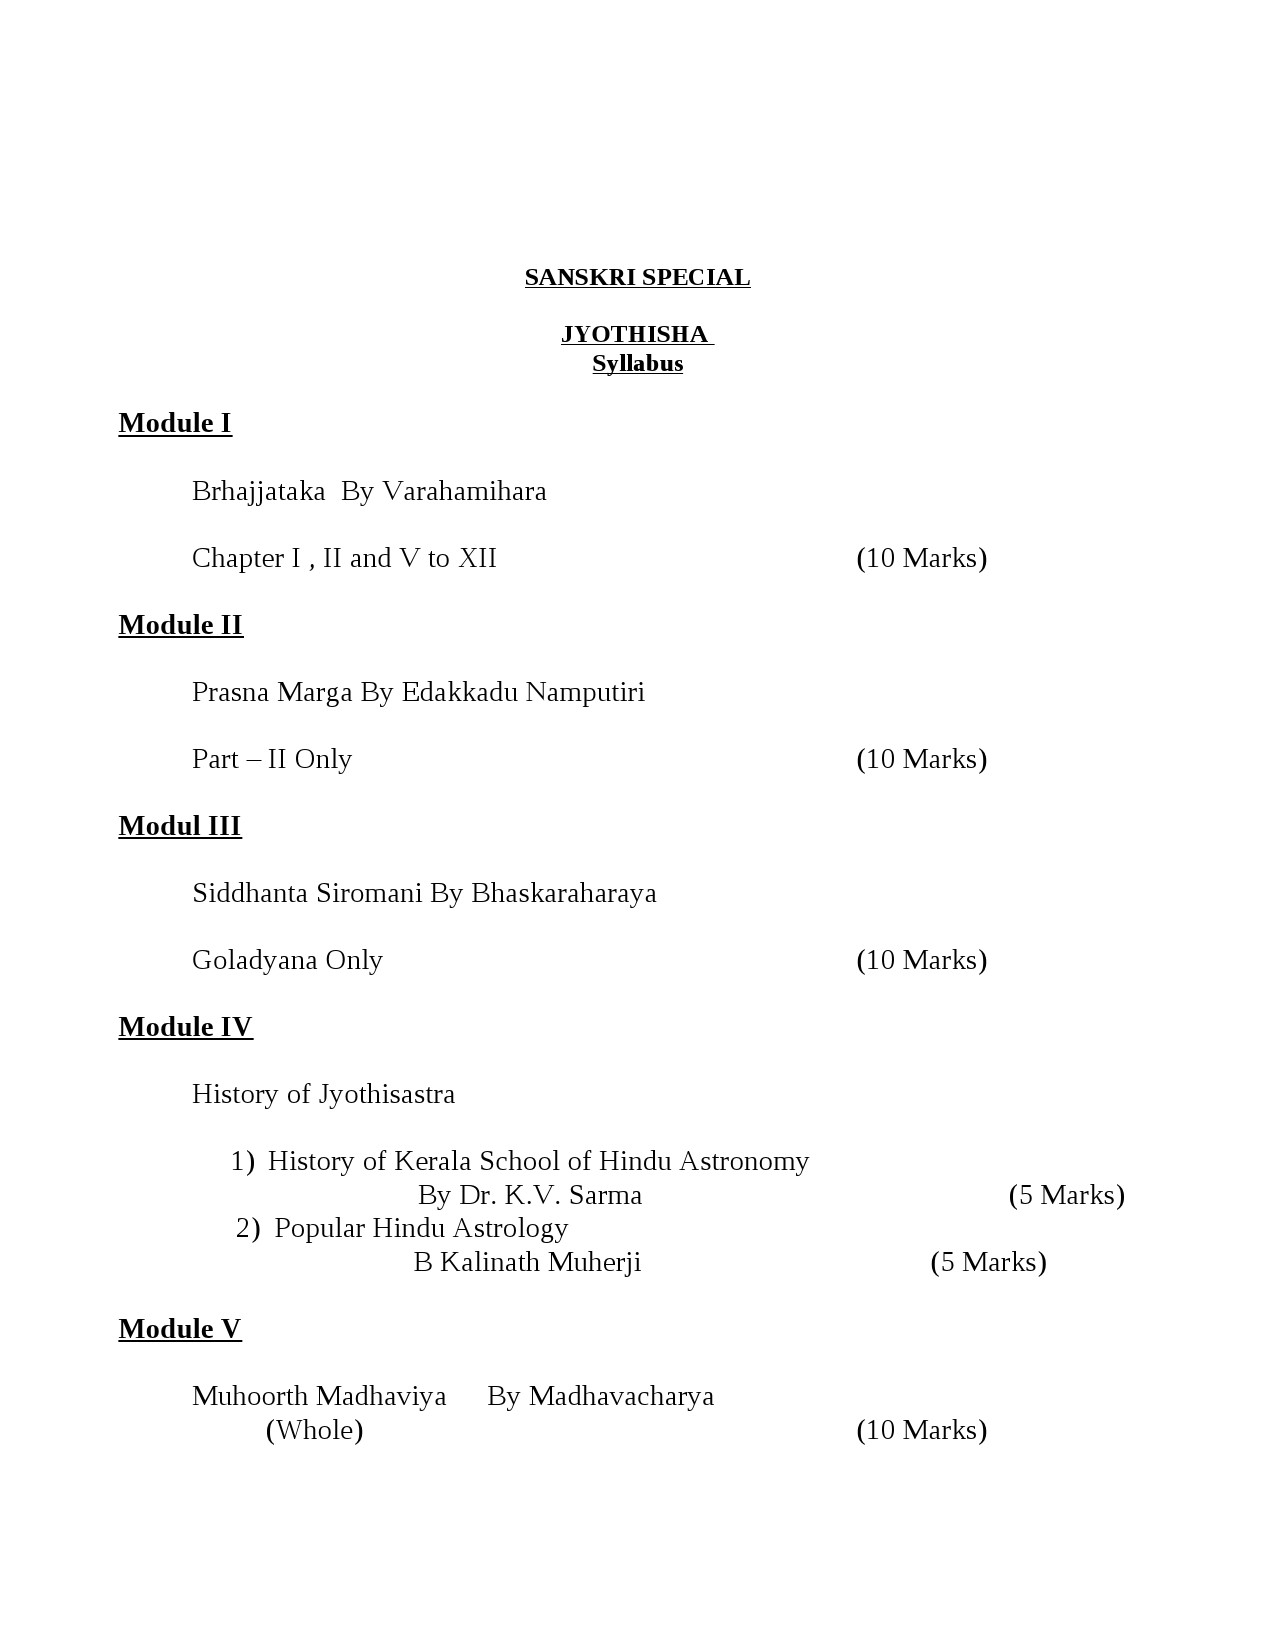 Sanskrit Syllabus for Kerala PSC 2021 Exam - Notification Image 8